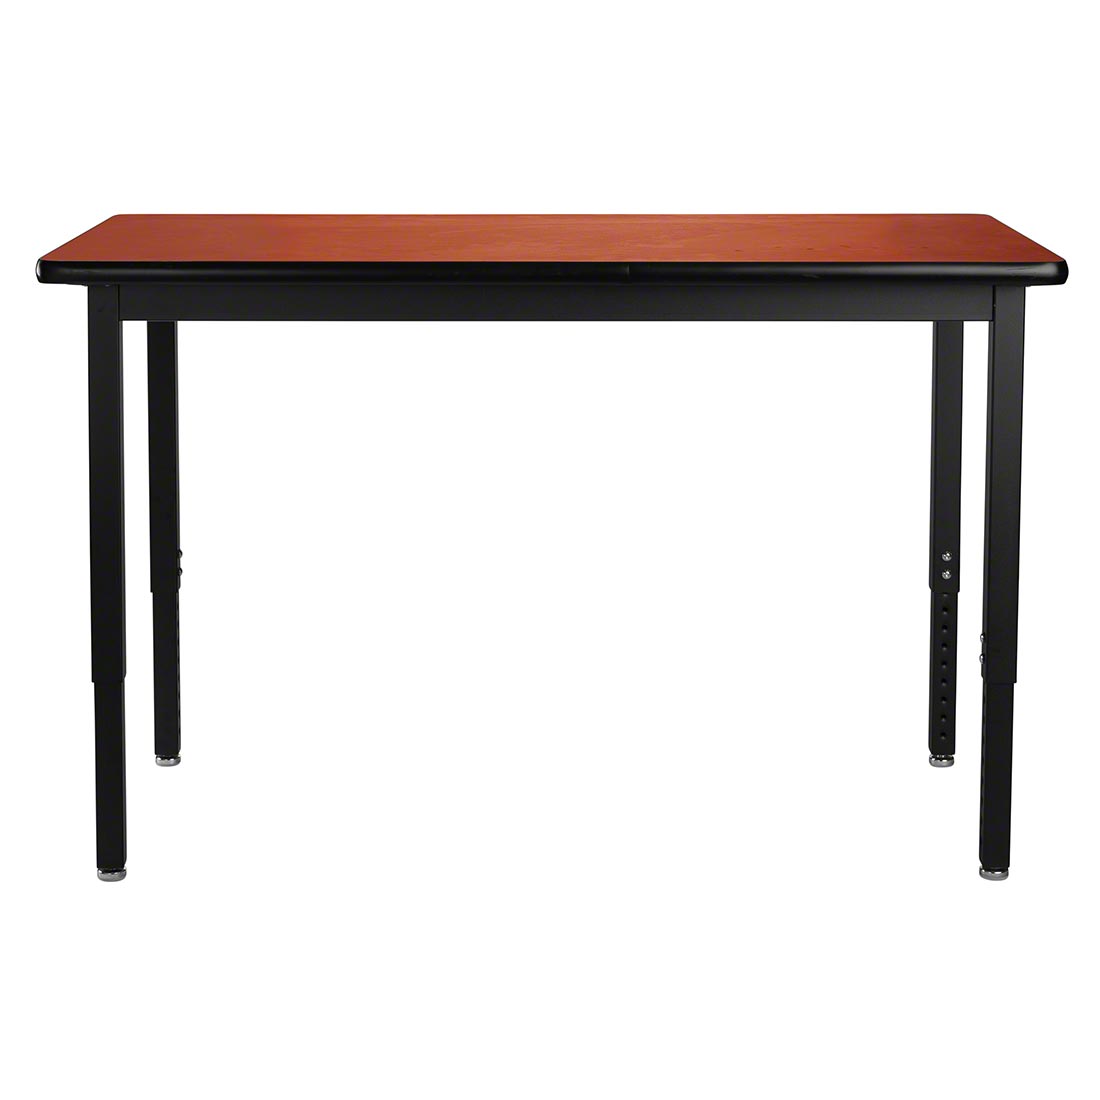 NPS Heavy Duty Steel Table, Black Frame, 48 x 60 x 30, Whiteboard Top